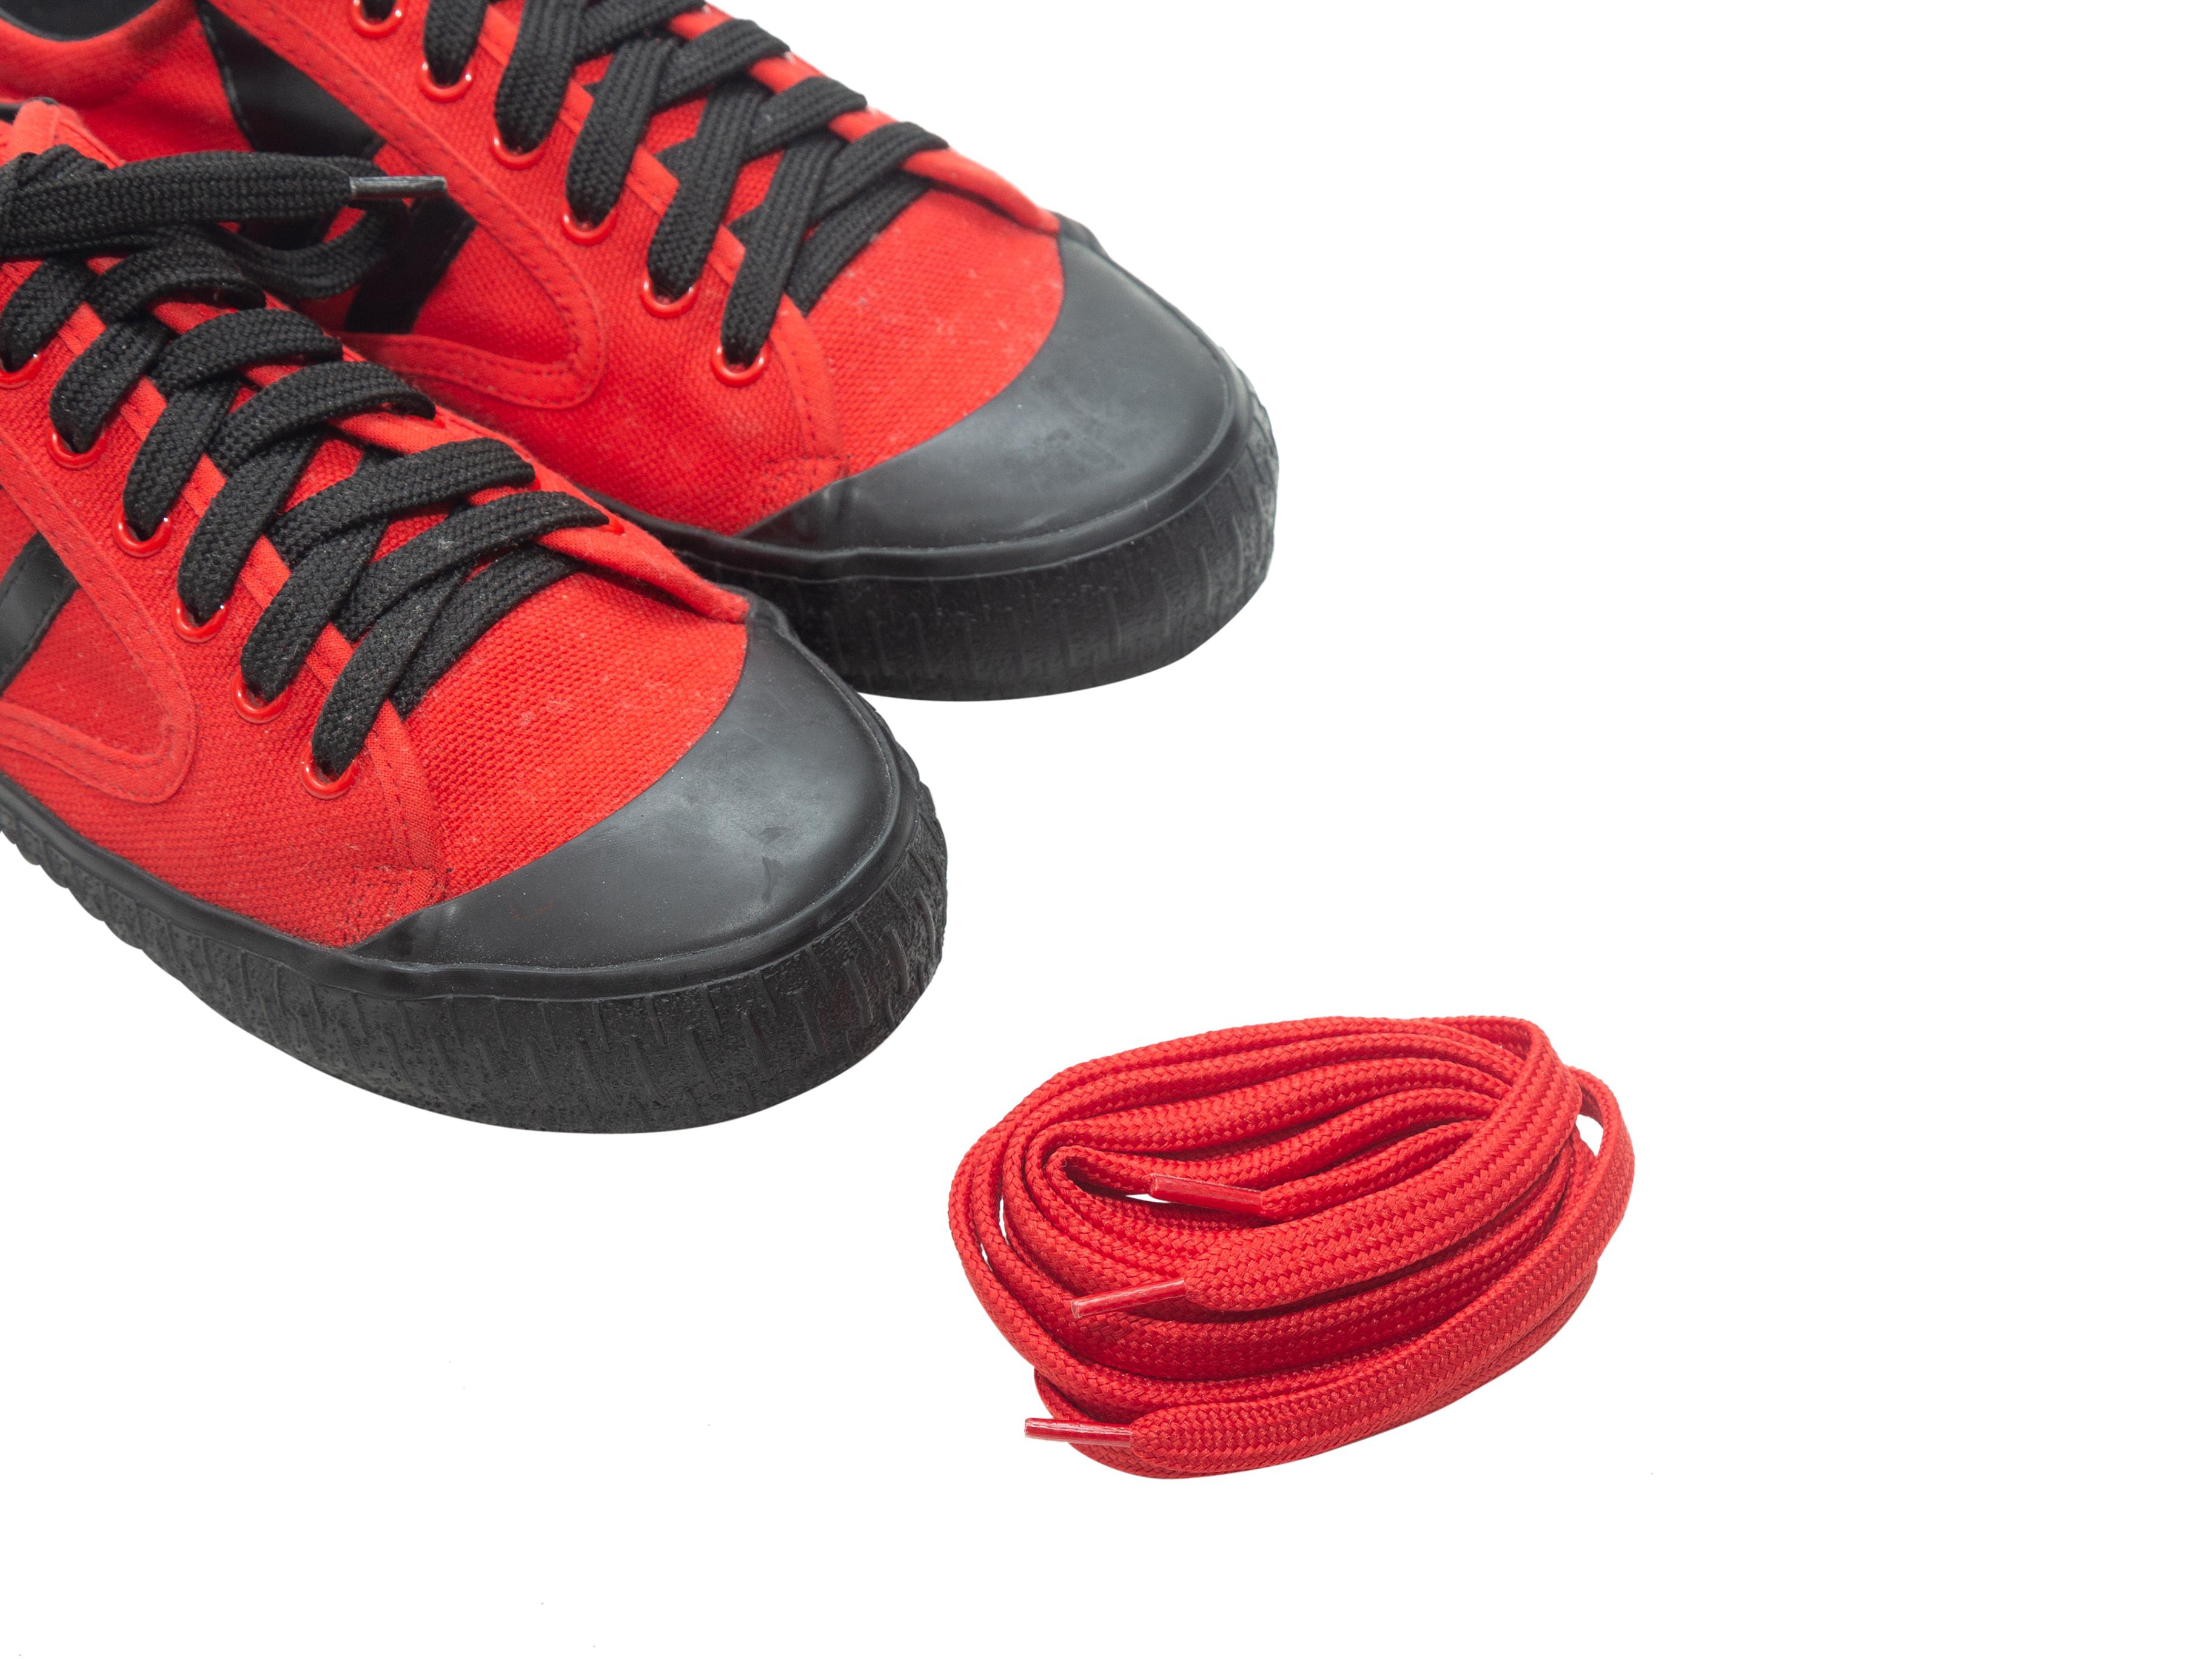 Women's Celine Red & Black Plimsole Low-Top Sneakers